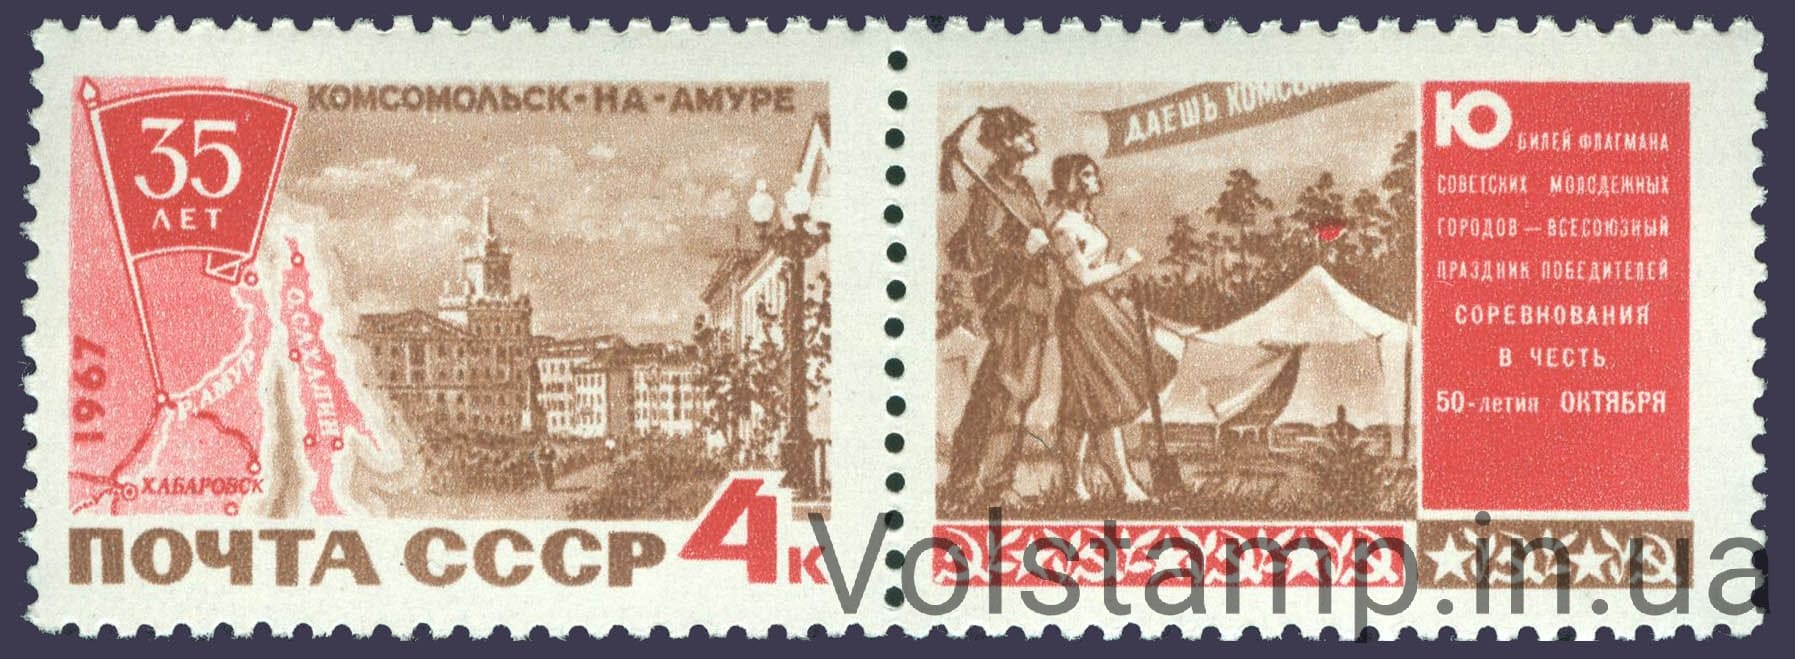 1967 марка с купоном 35 лет Комсомольску-на-Амуре №3403